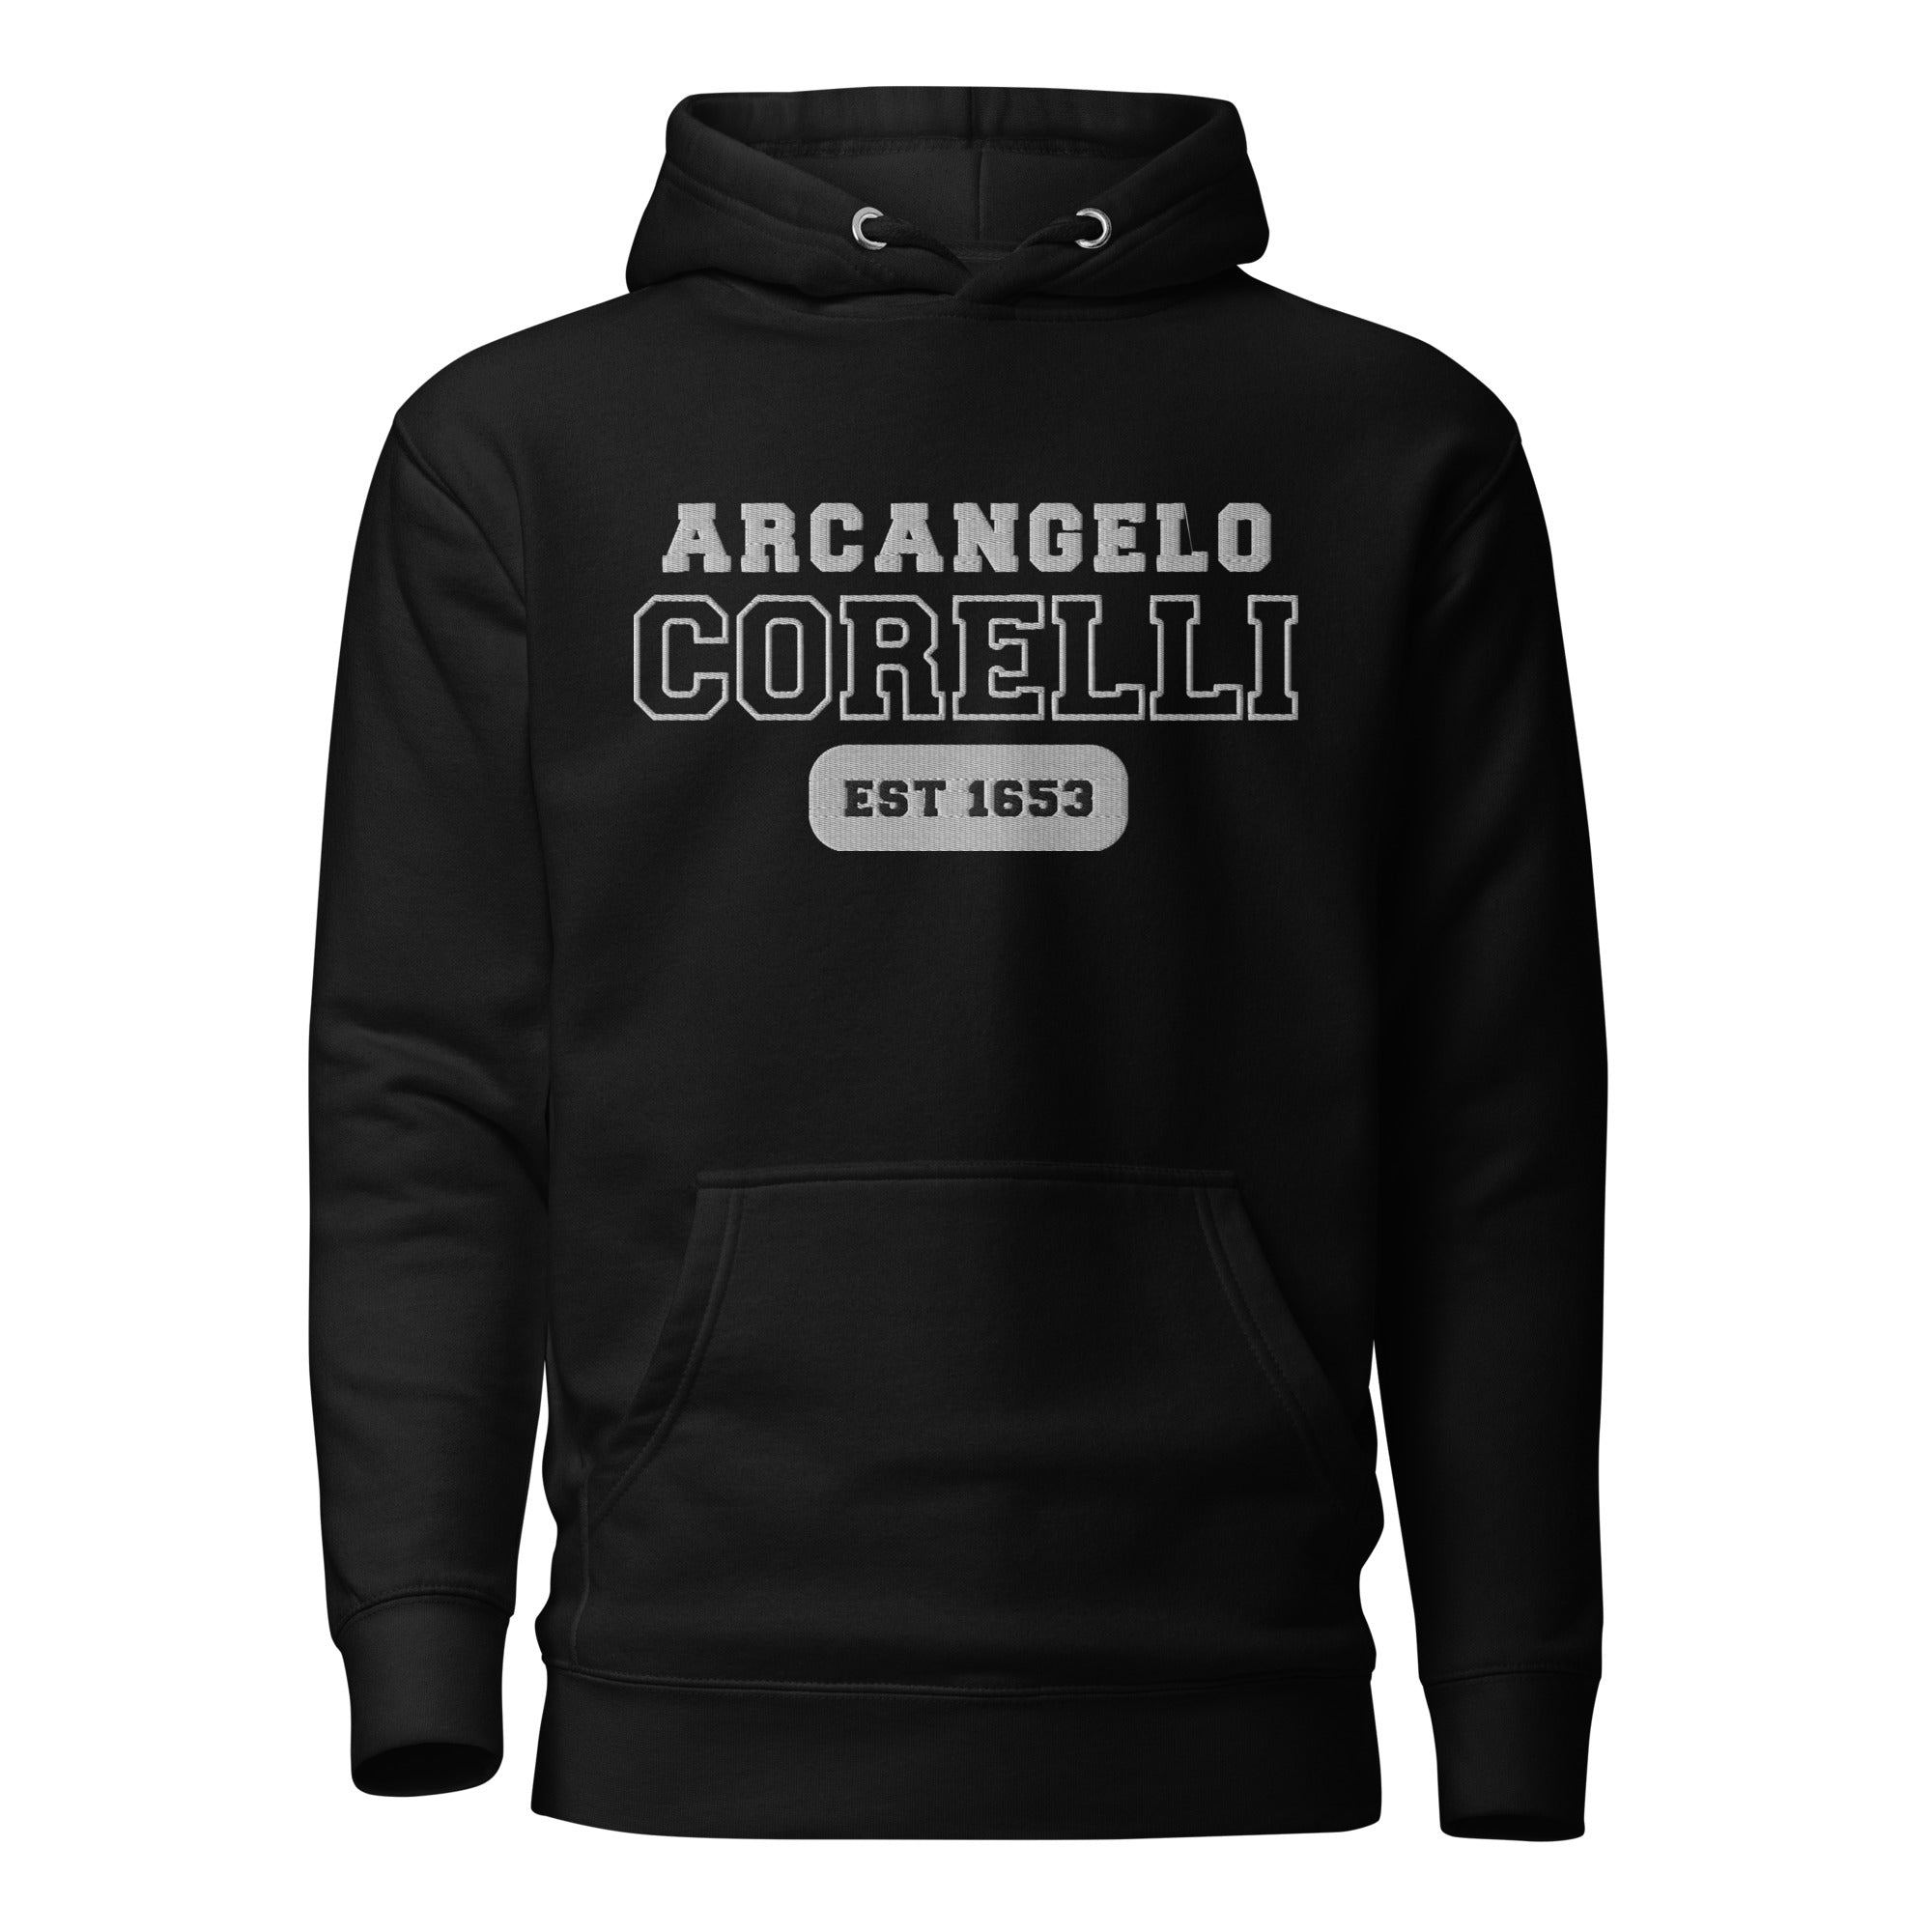 Arcangelo Corelli - Premium US College Style Hoodie